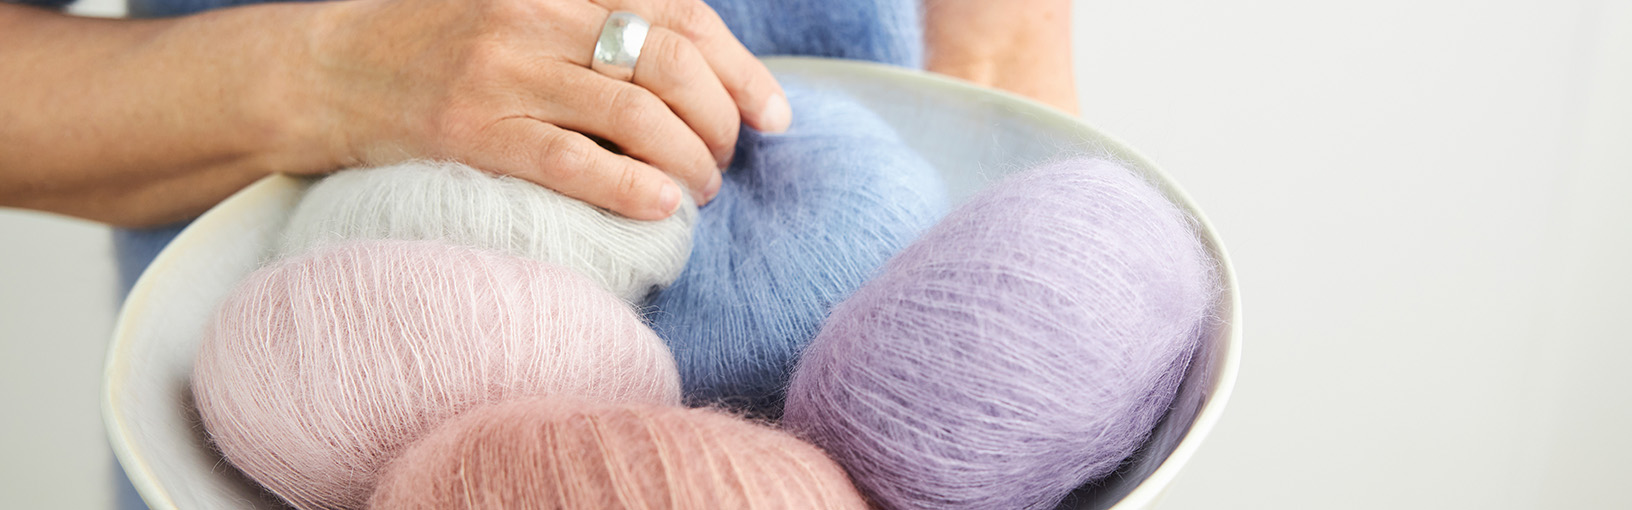 Hilos de alta calidad para tejer, crochet y fieltro Hilos Lana Grossa | Hand-dyed